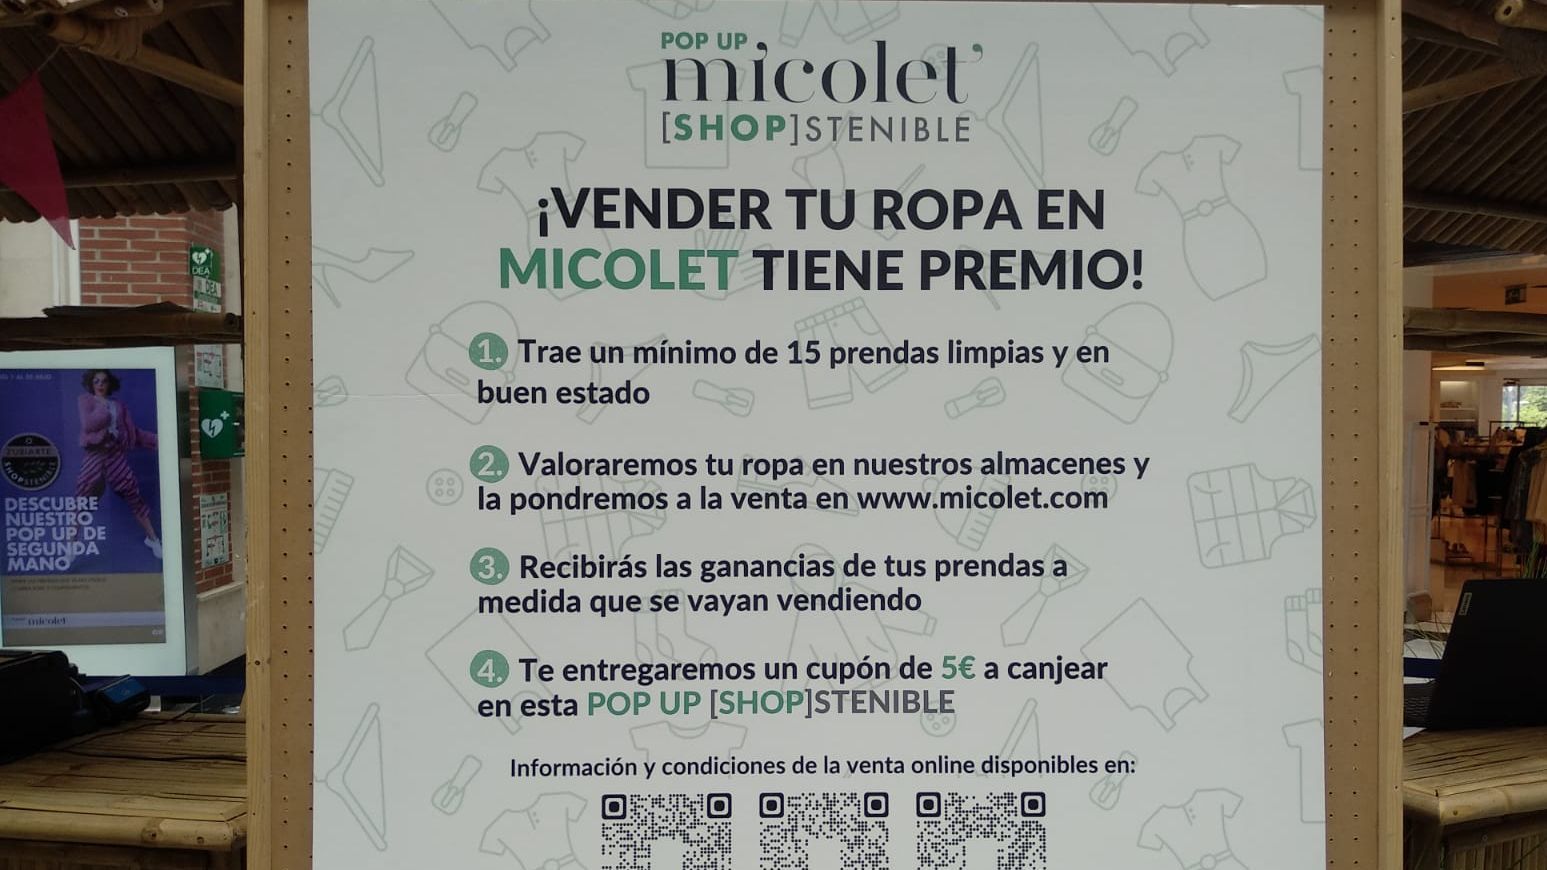 Micolet, tienda on line de ropa usada, abre una tienda física julio en Bilbao - NIUS